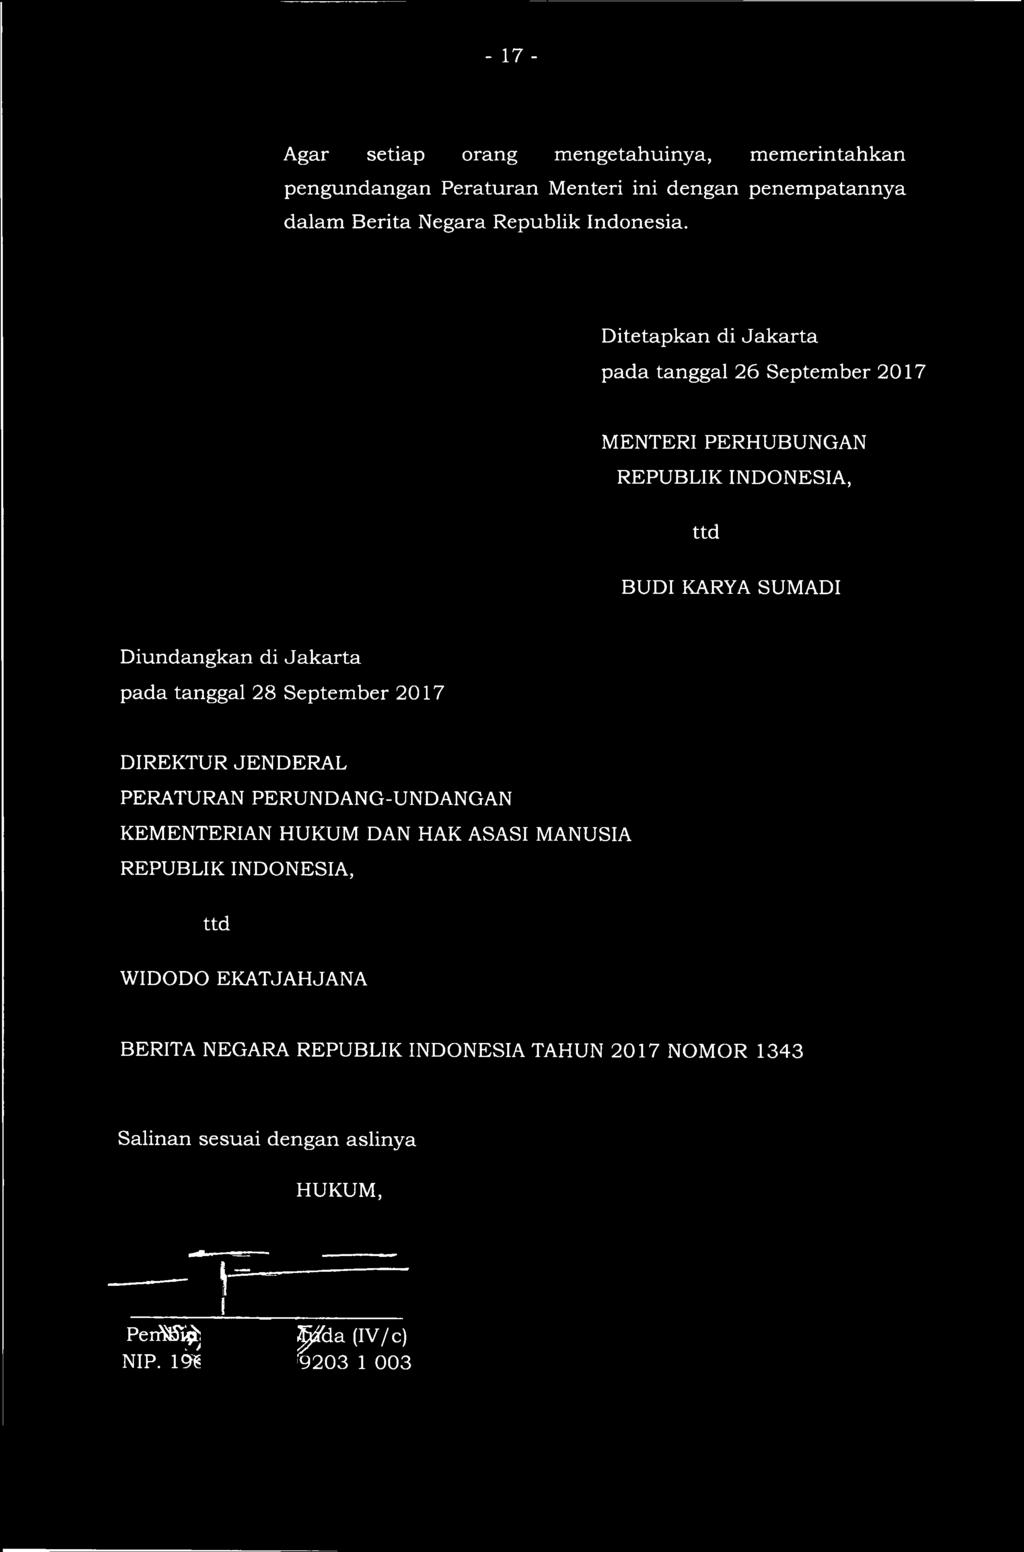 Ditetapkan di Jakarta pada tanggal 26 September 2017 MENTERI PERHUBUNGAN REPUBLIK INDONESIA, ttd